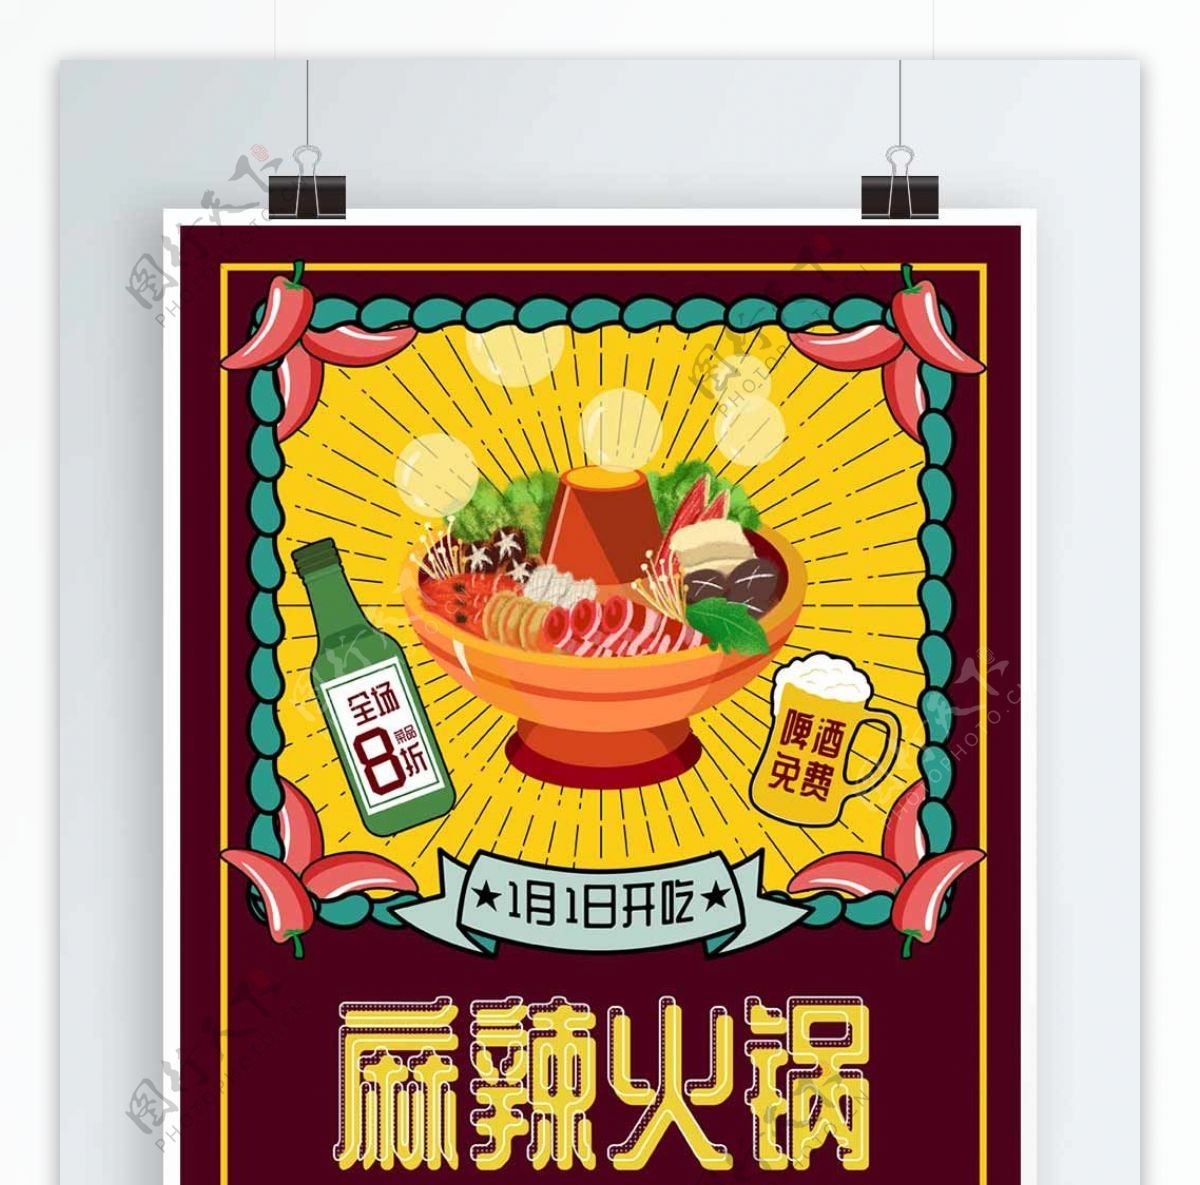 原创火锅美食简约手绘风促销活动海报